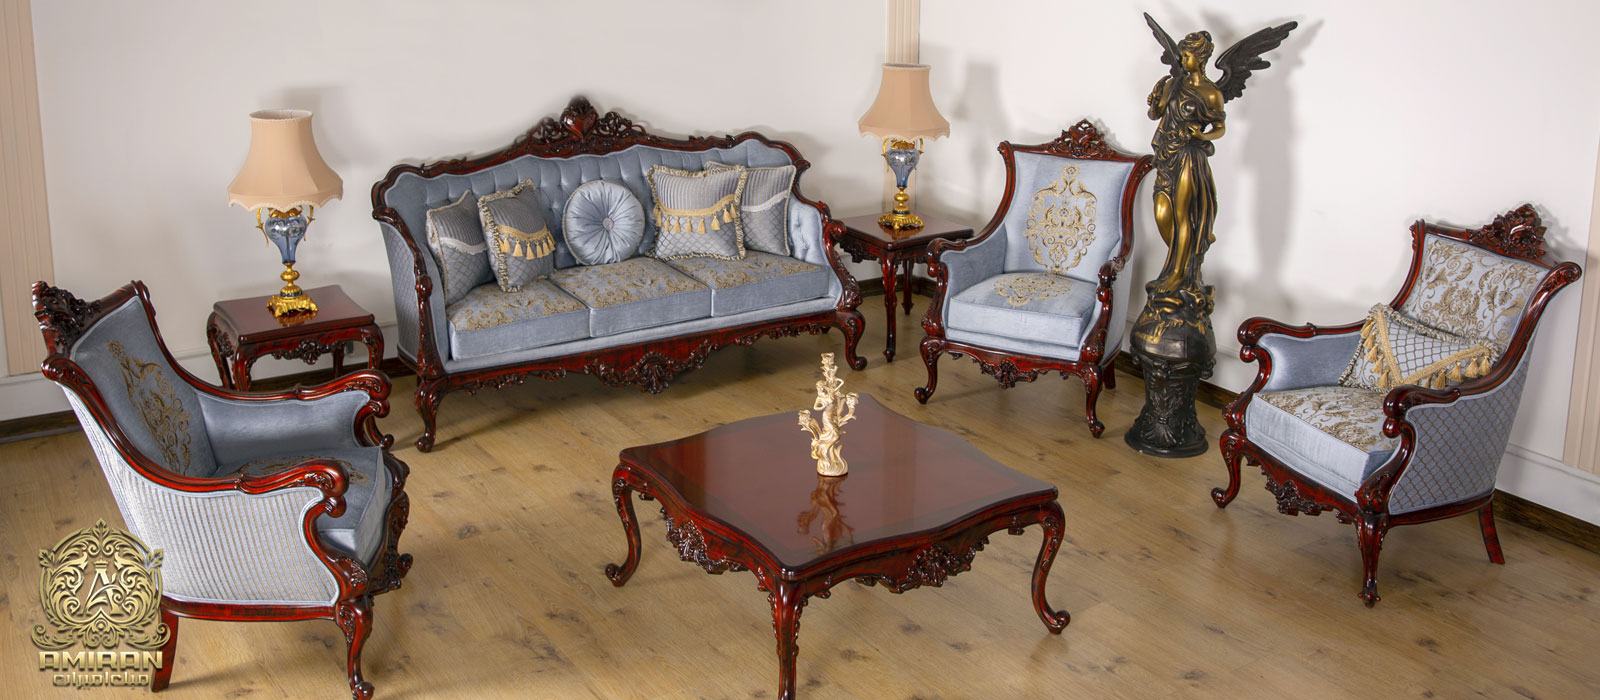 Amiran Classic Furniture